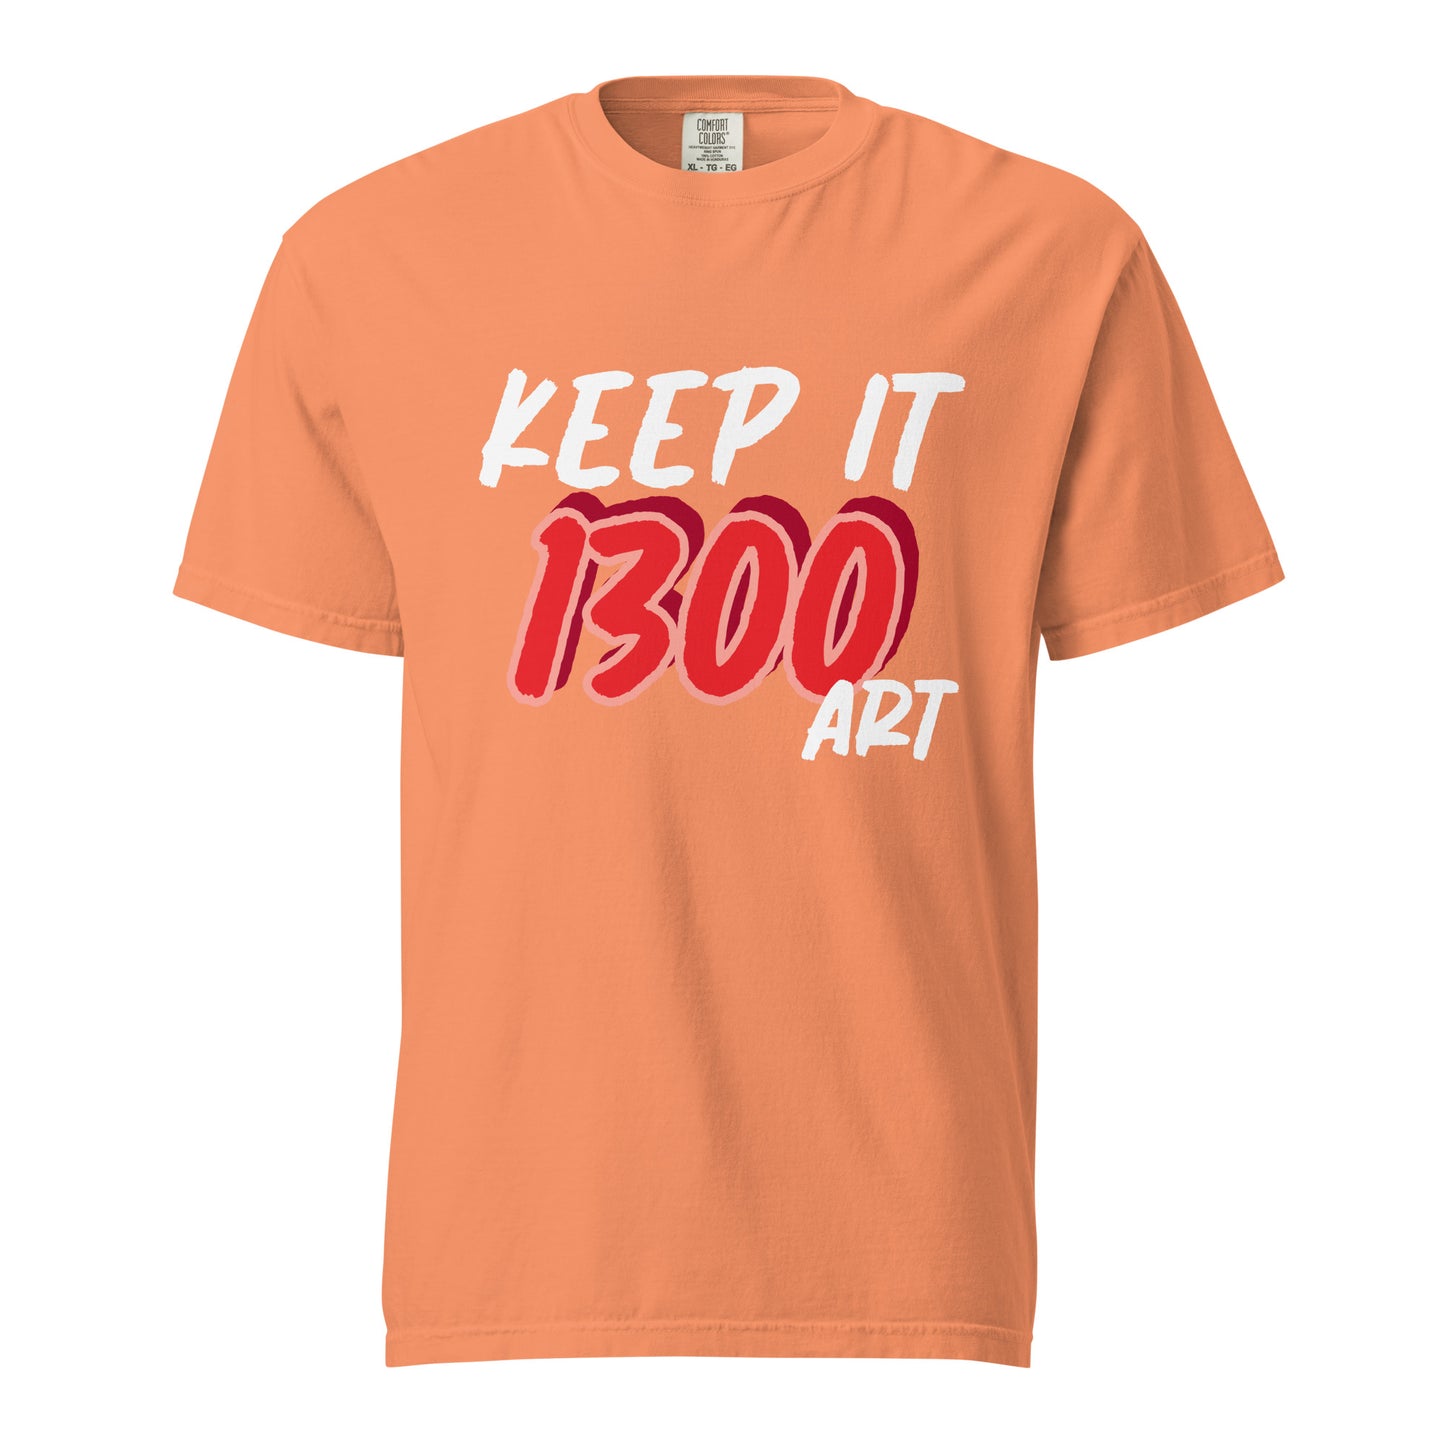 "KEEP IT 1300 ART" Unisex heavyweight t-shirt